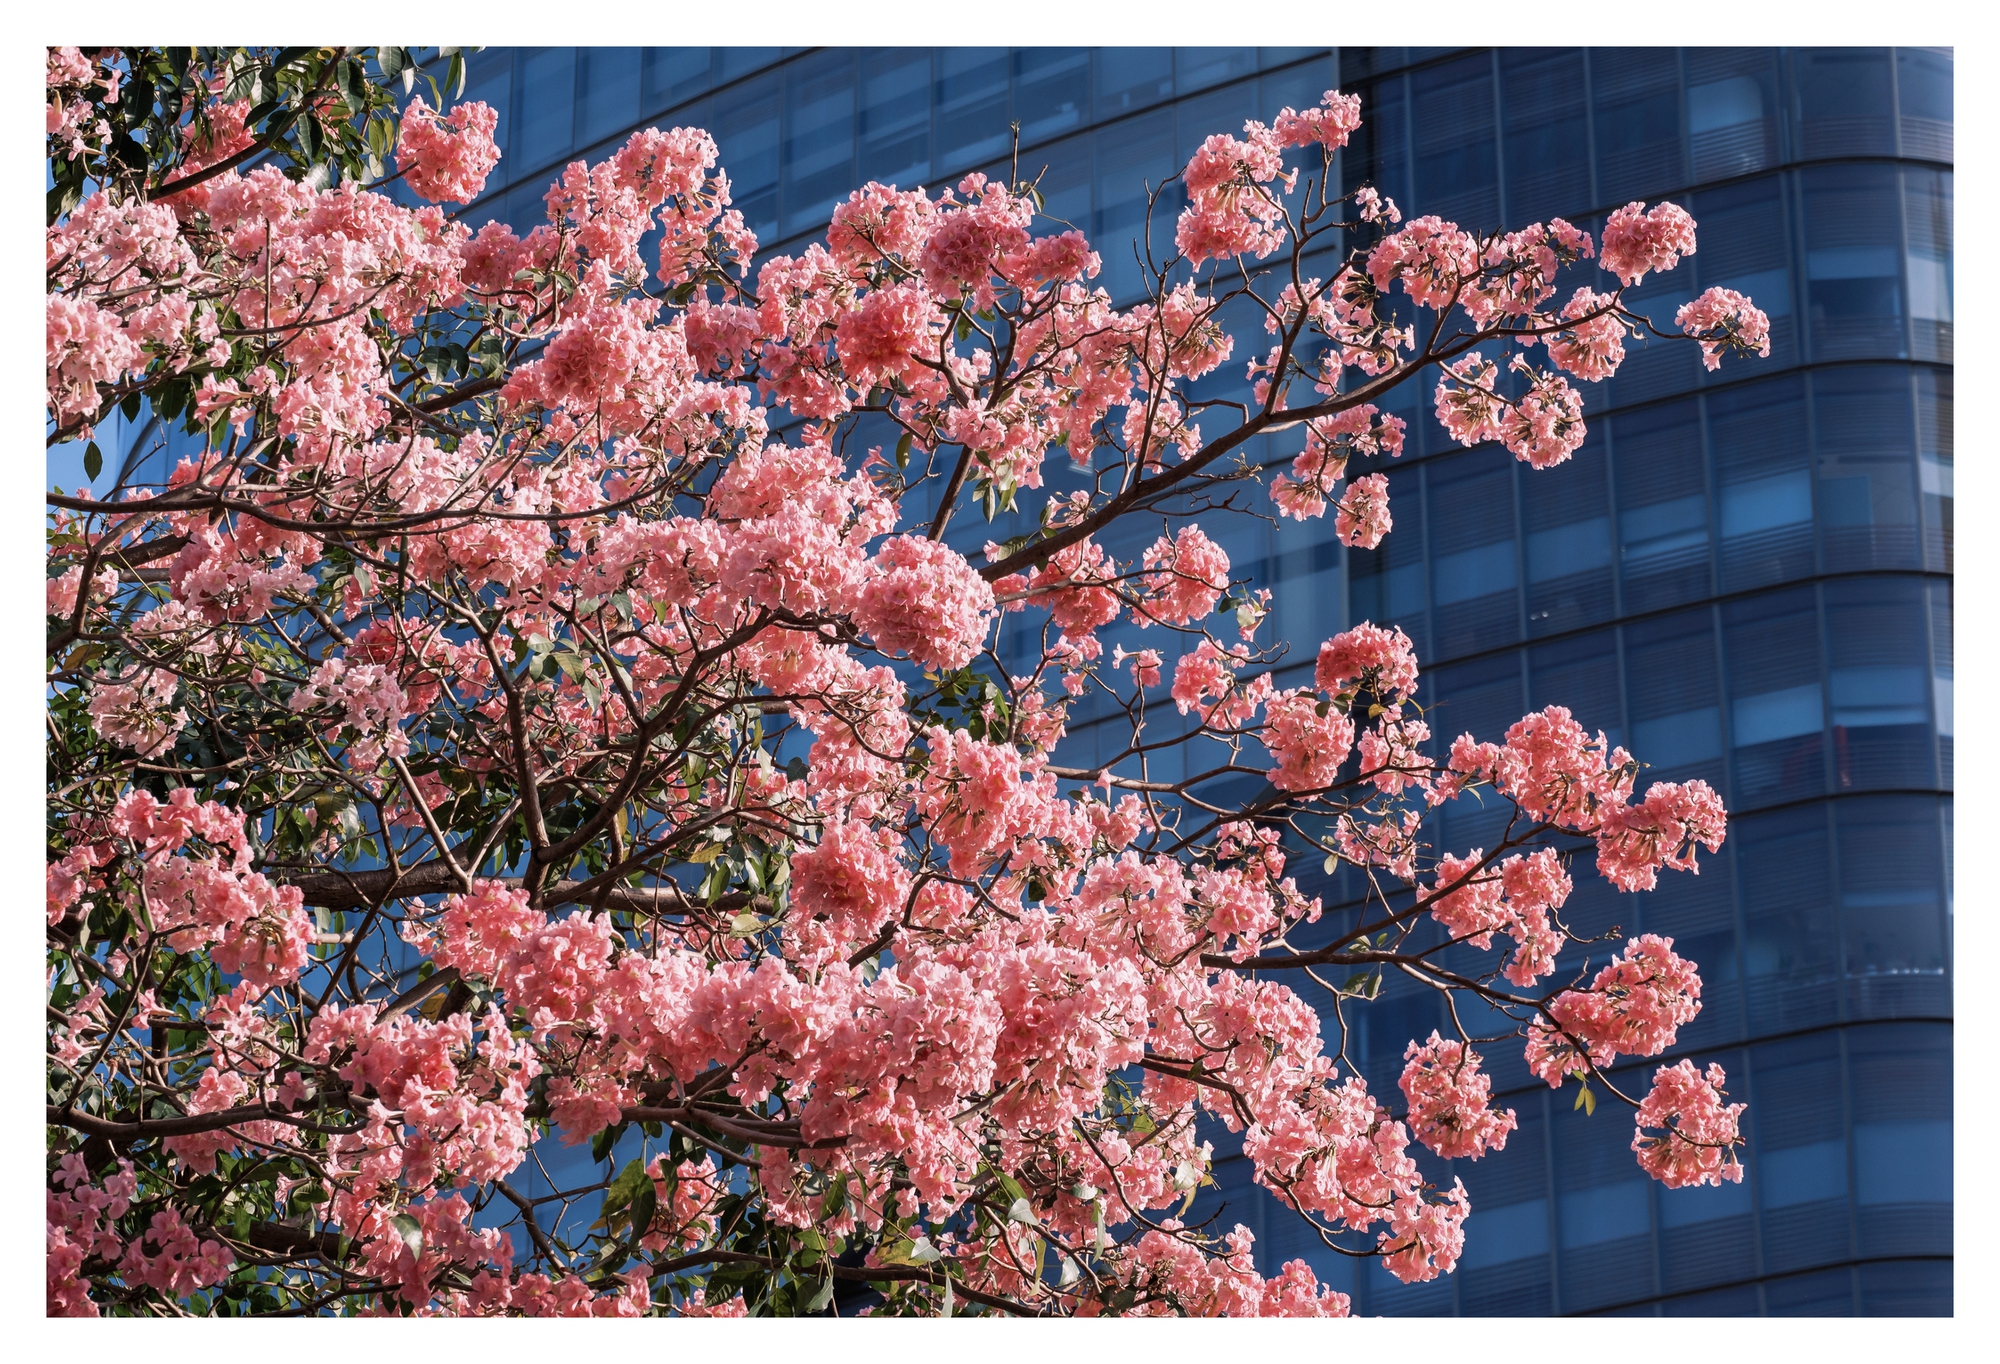 Mùa kèn hồng rợp trời Sài Gòn, chợt thấy thành phố mộng mơ biết bao giữa sắc hoa rực rỡ- Ảnh 10.